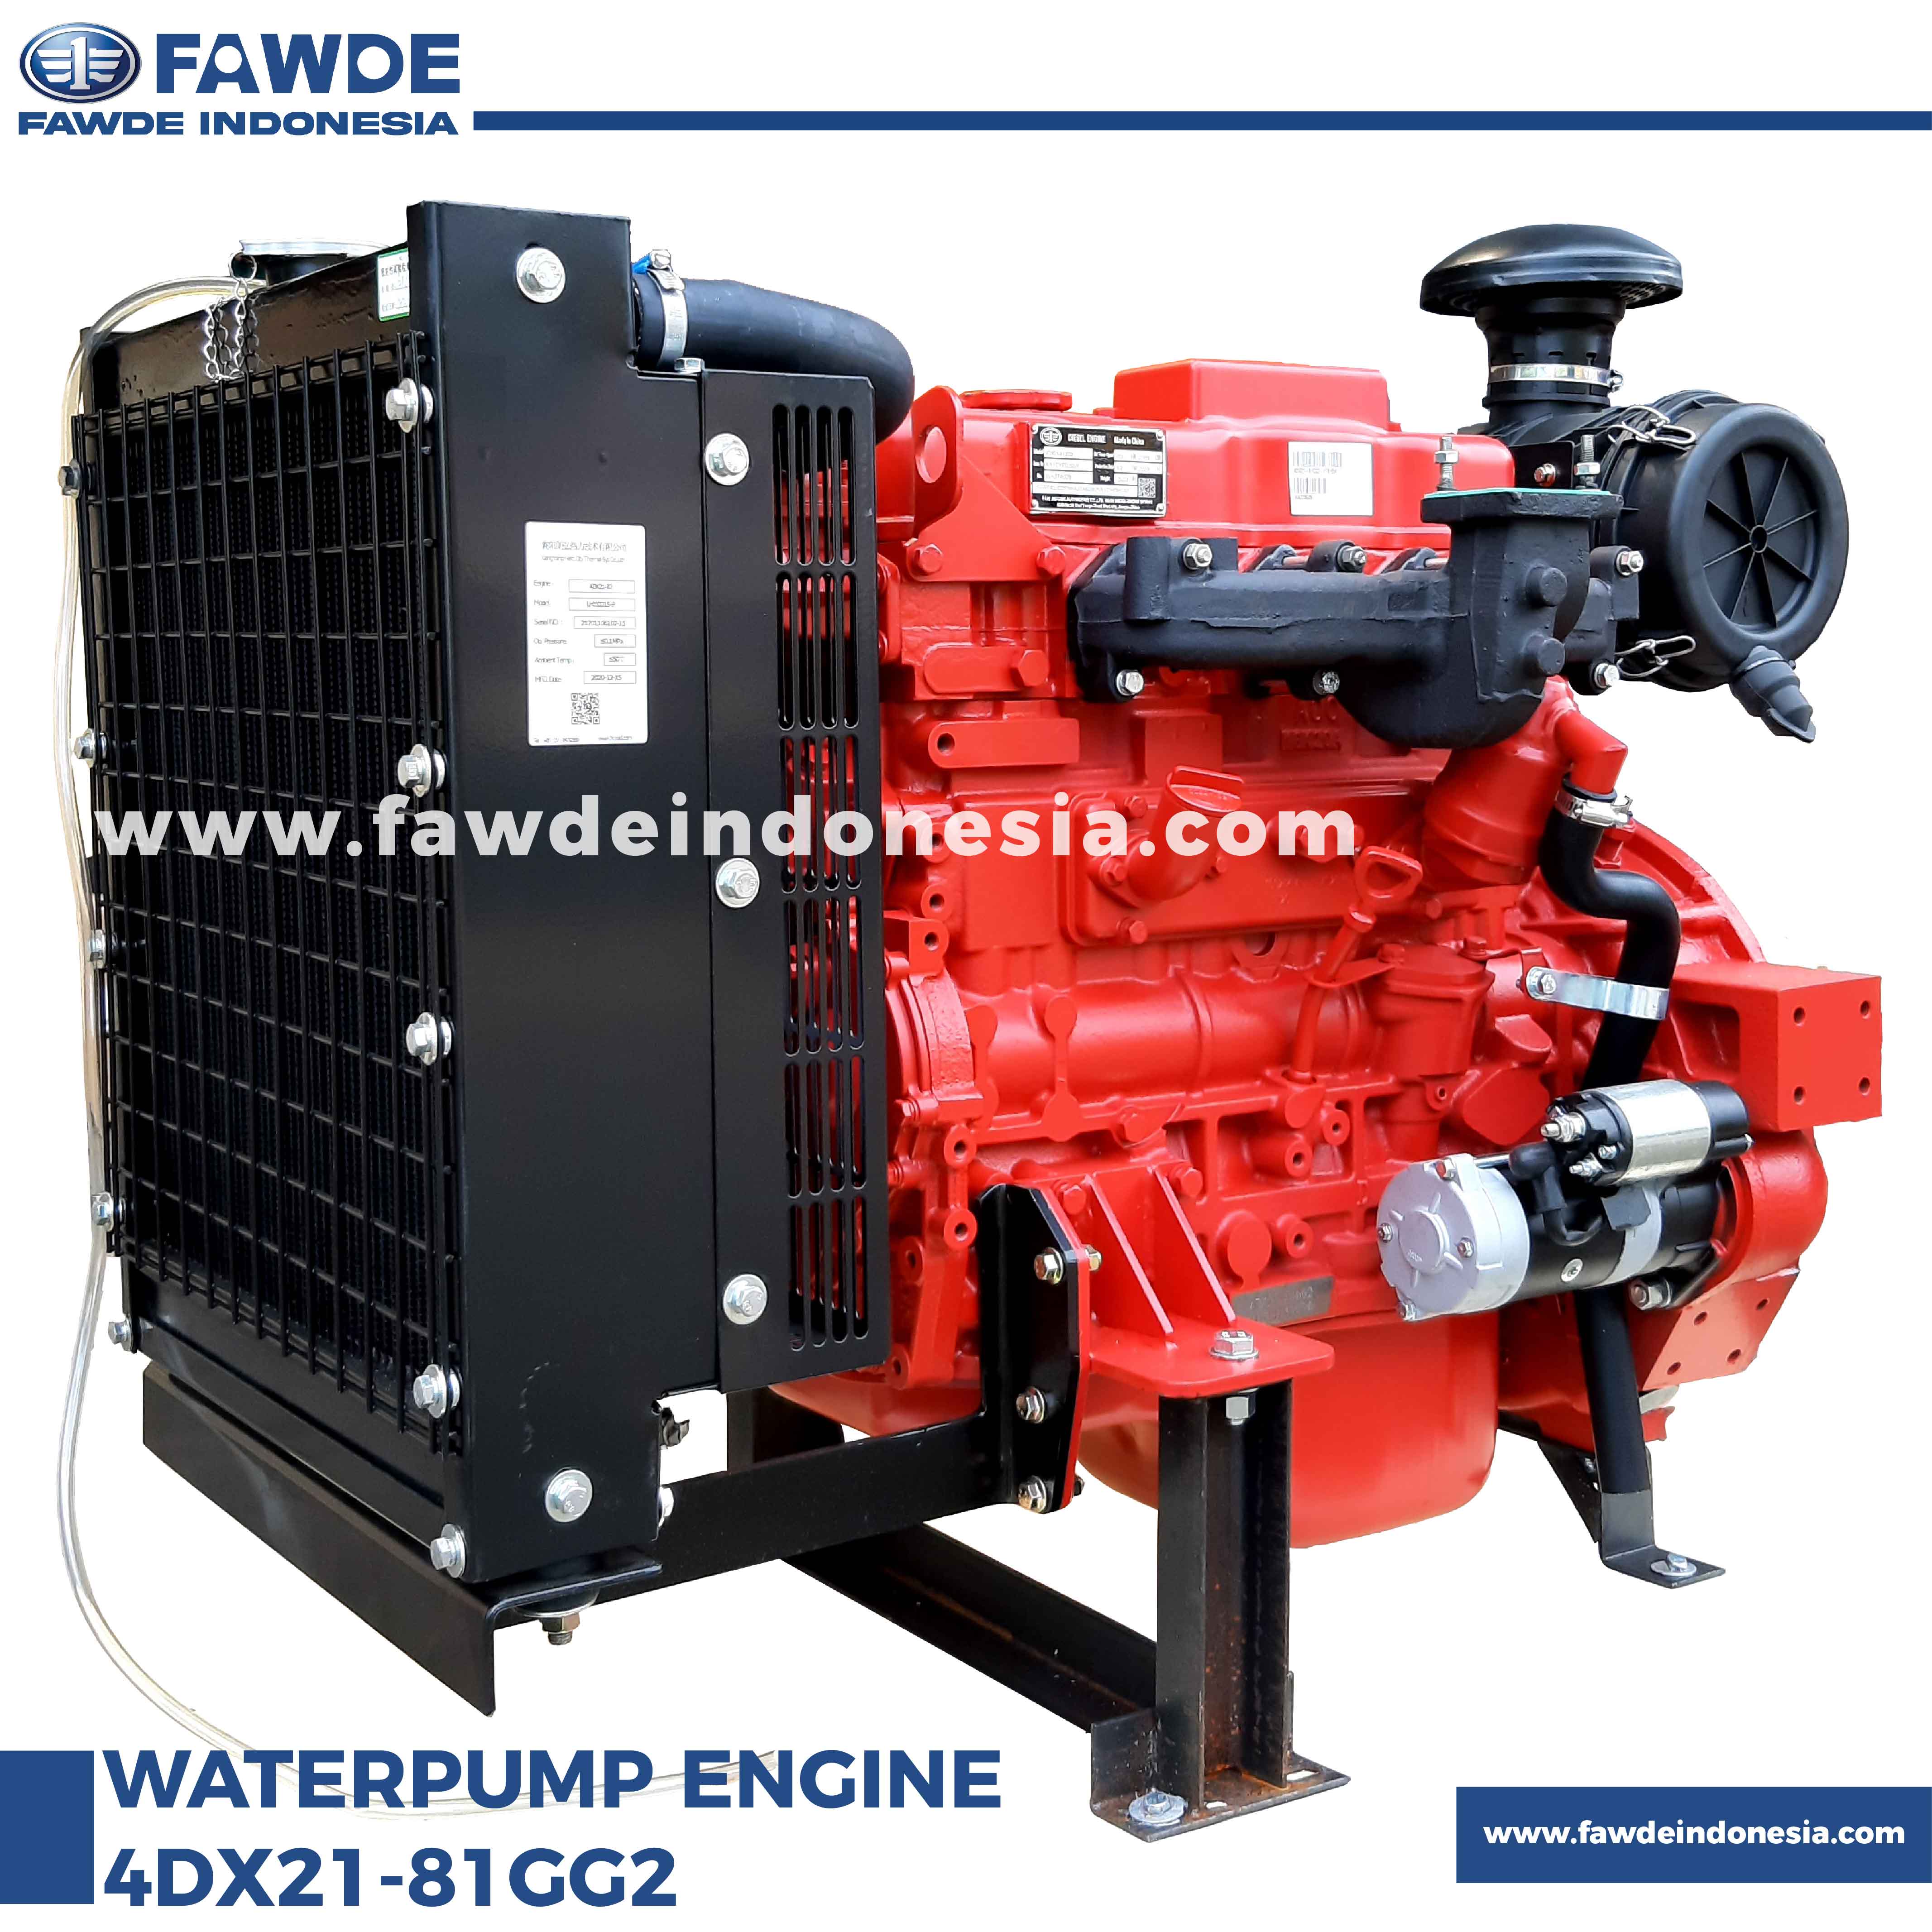 waterpump engine 4DX21-81GG2_1